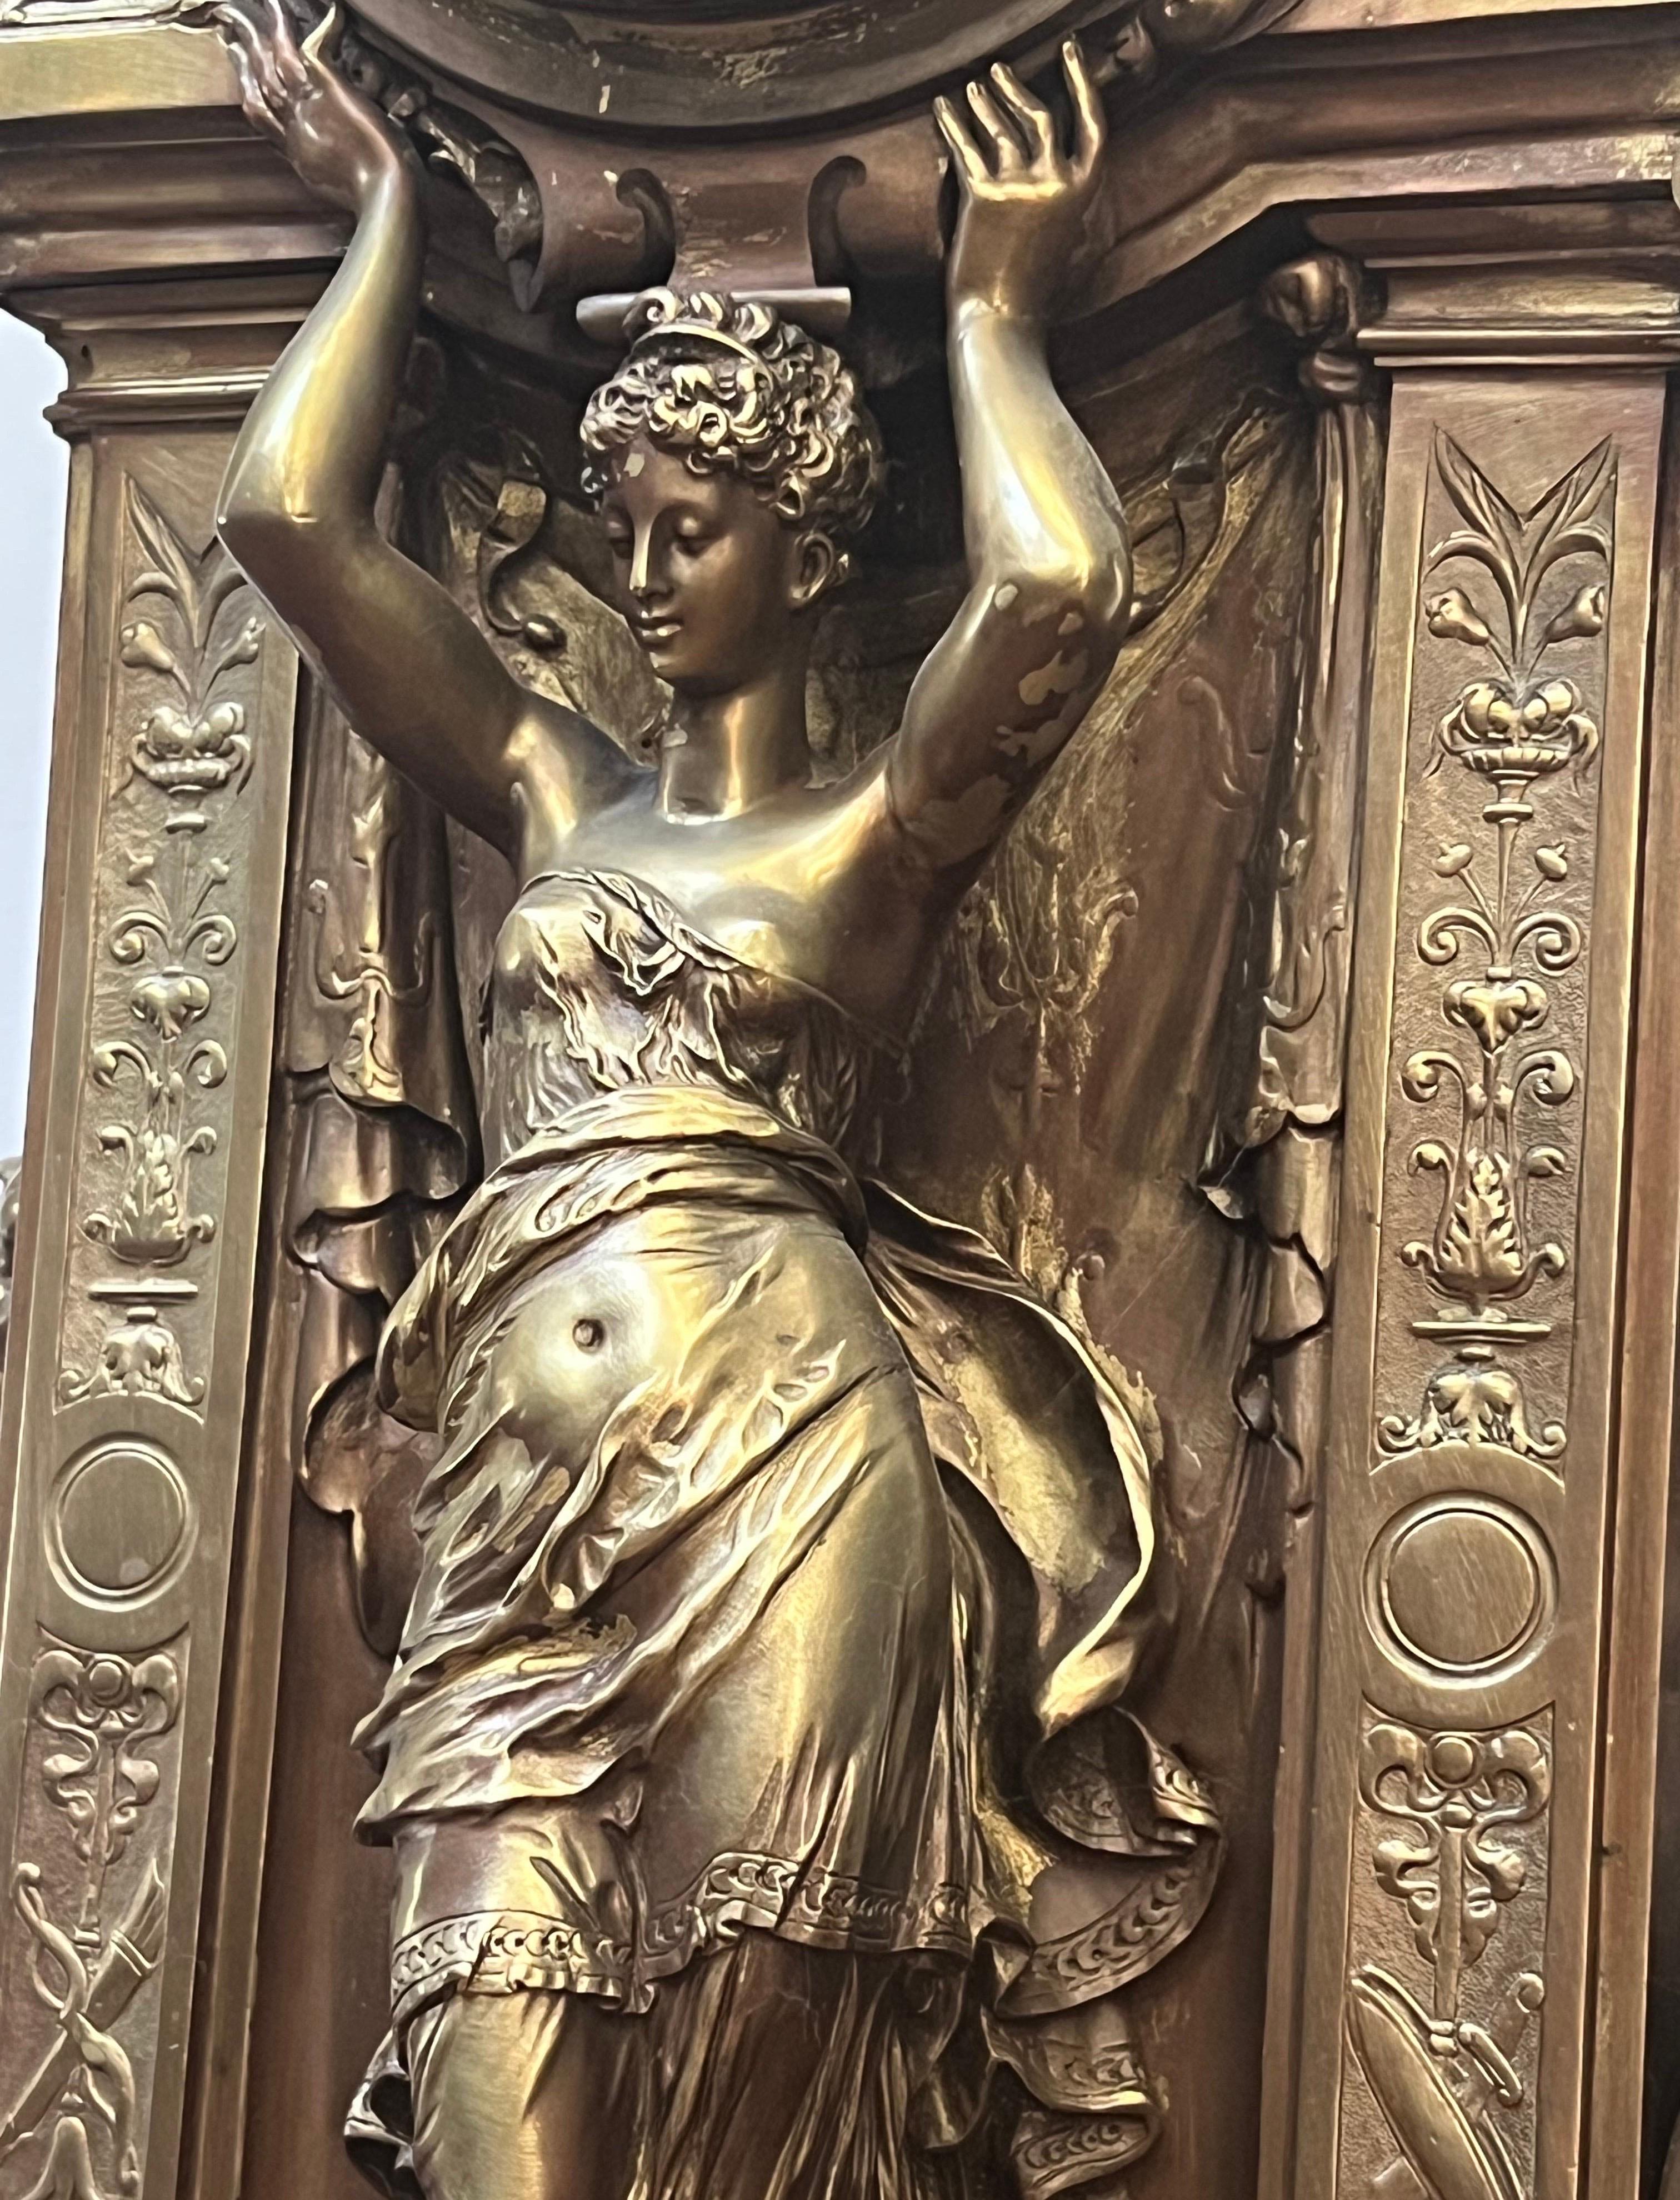 Cette belle horloge du 19e siècle a fait l'objet d'une attention particulière aux détails.  Des chérubins sont dos à dos au sommet du clocher tandis qu'une femme drapée tient l'horloge au-dessus de sa tête.  